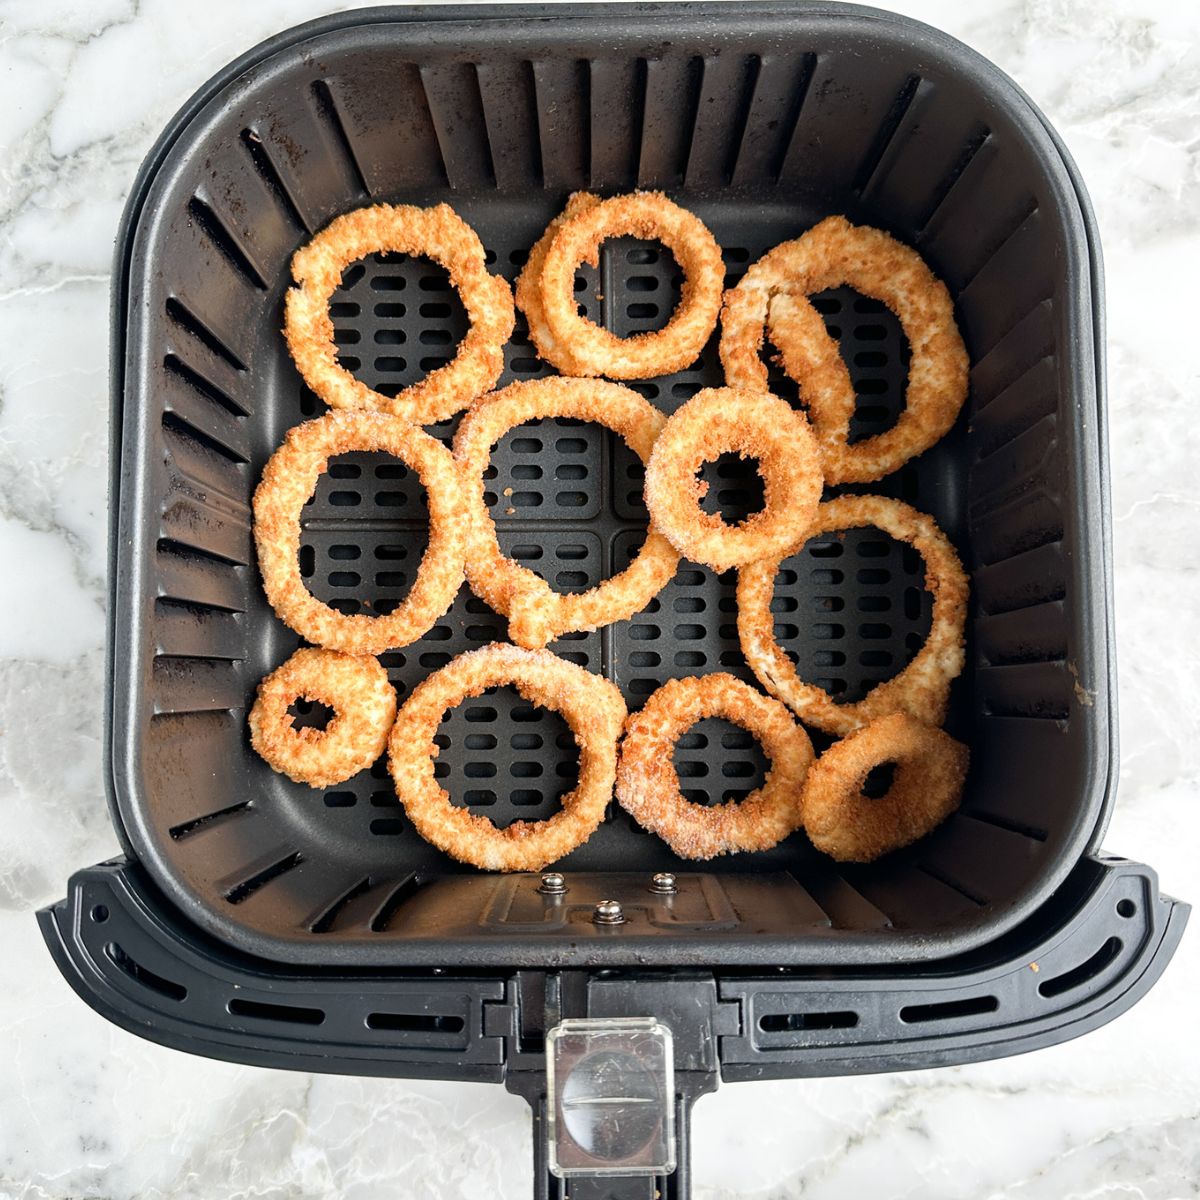 Onion rings in air fryer basket. 